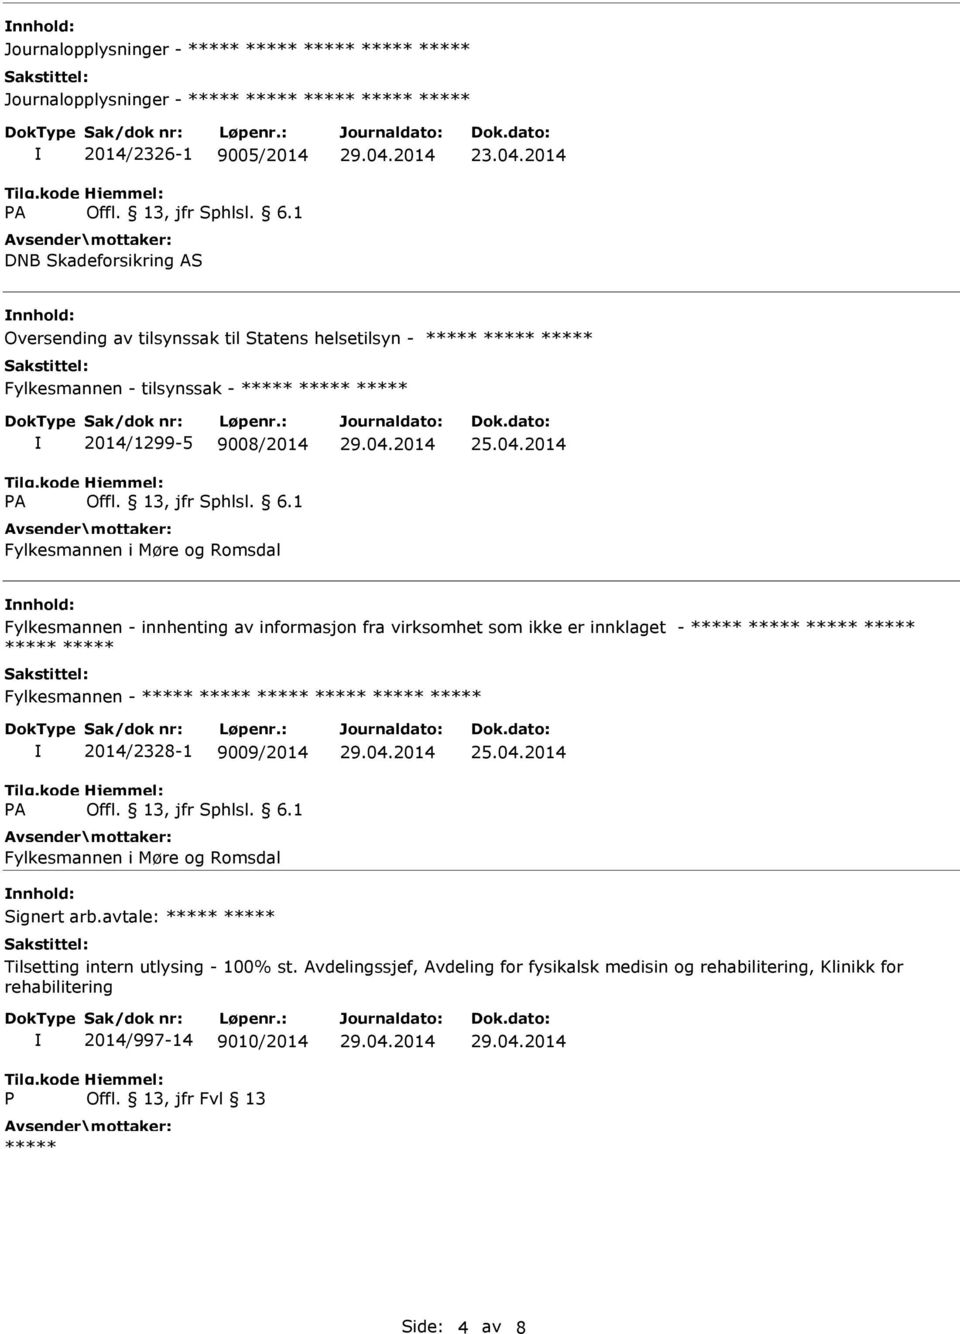 2014 nnhold: Fylkesmannen - innhenting av informasjon fra virksomhet som ikke er innklaget - Fylkesmannen - 2014/2328-1 9009/2014 Fylkesmannen i Møre og Romsdal